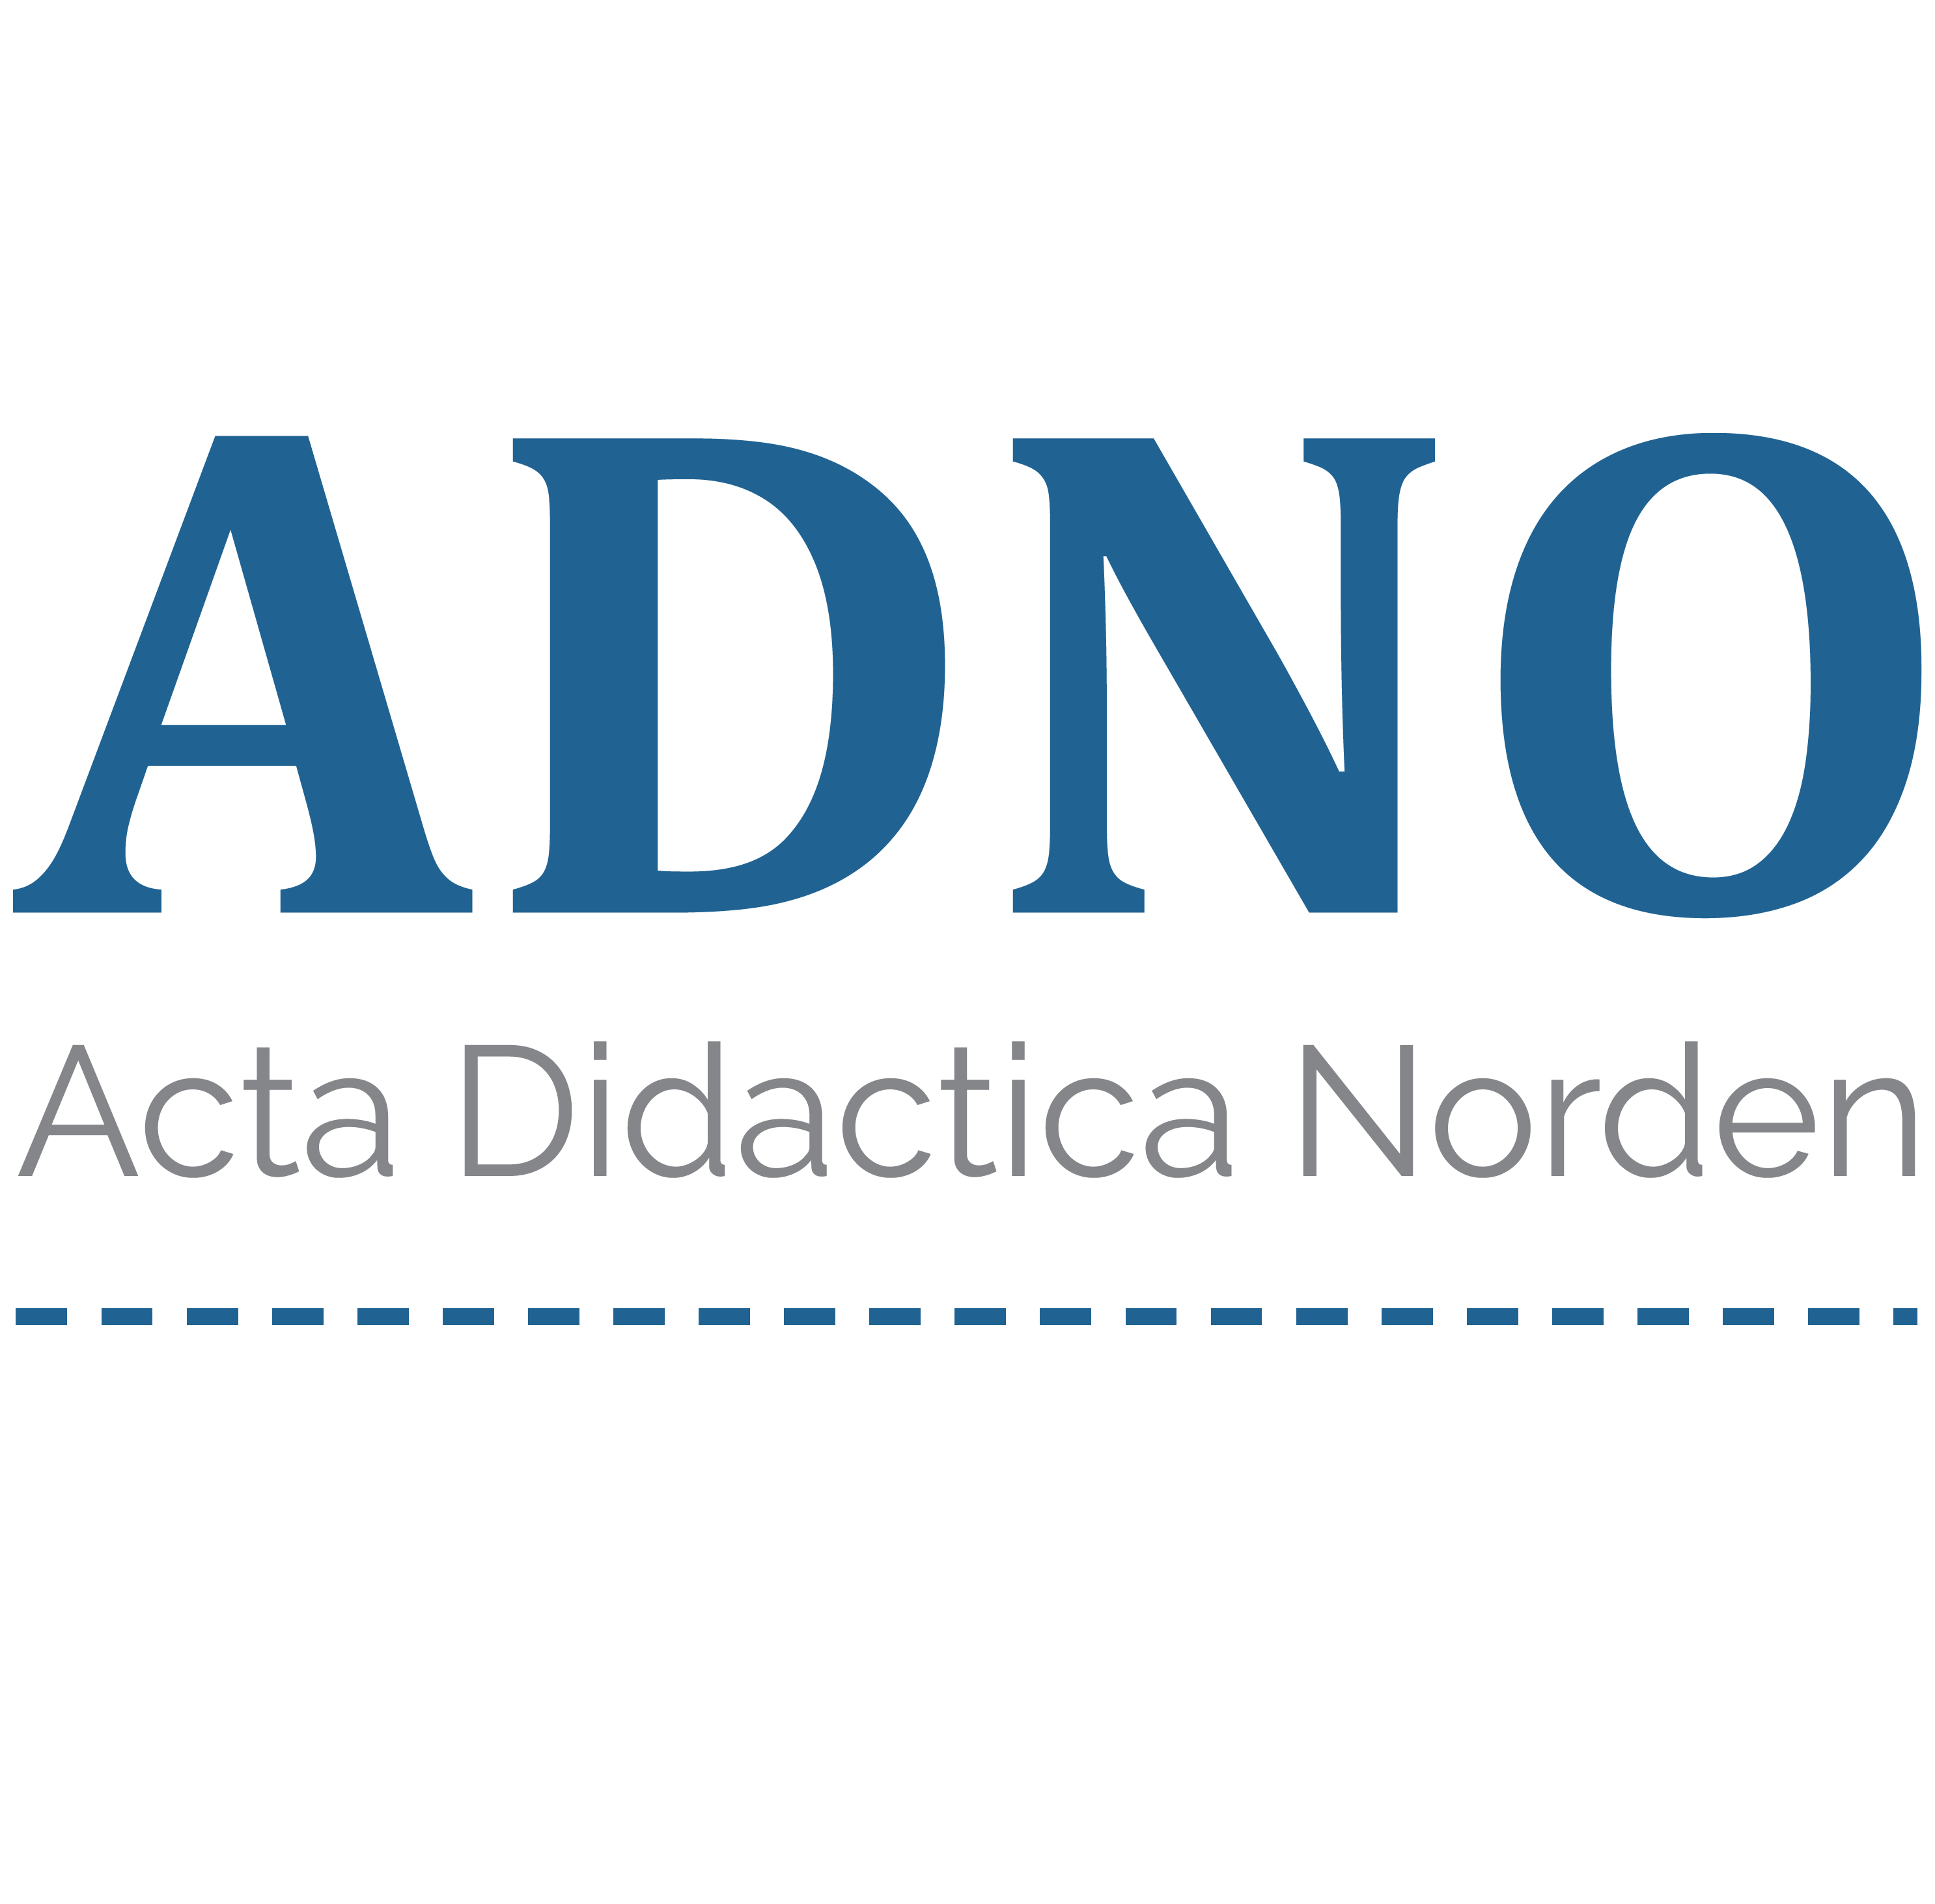 Acta Didactica Norden logo